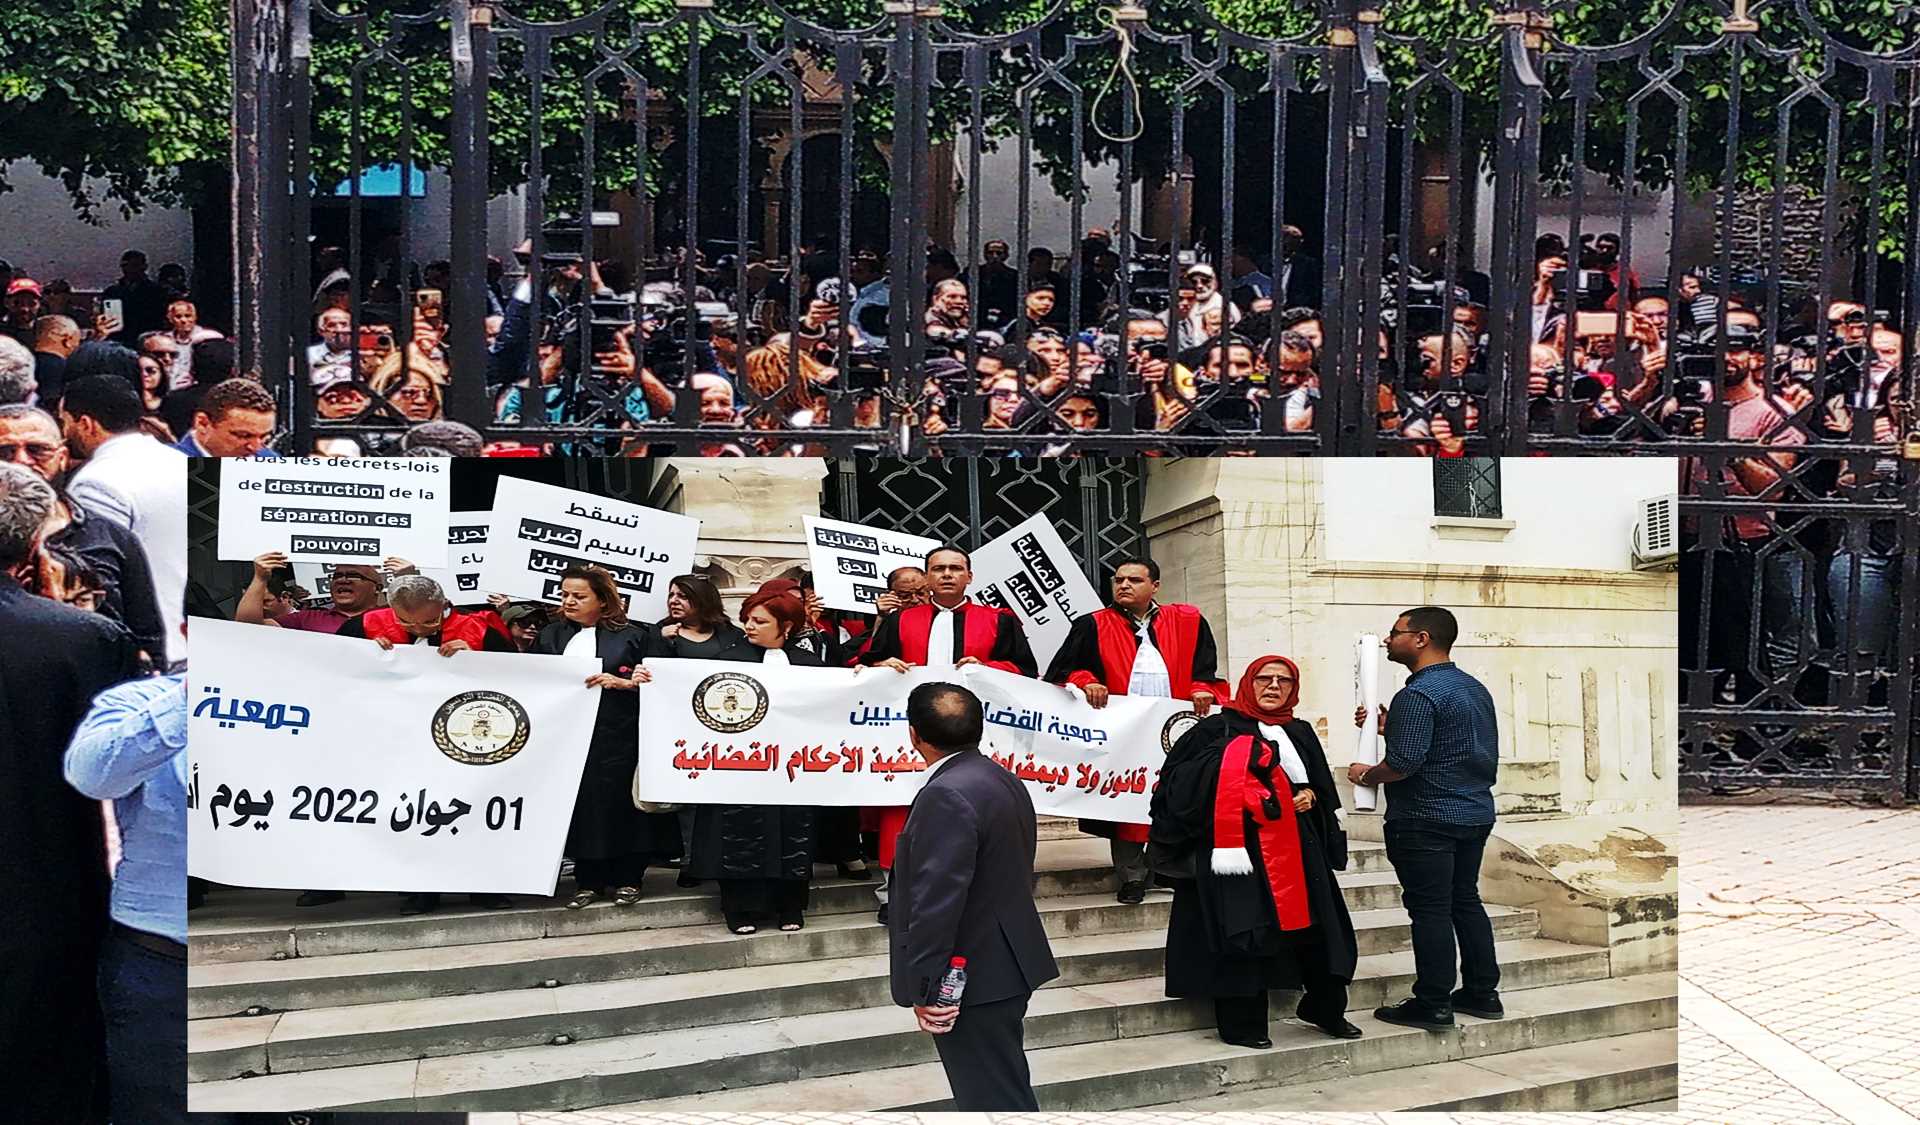 الذكرى الأولى لـ”مجزرة القضاة”: مظلمة تخيّم على مناخ ترهيب قضاة تونس